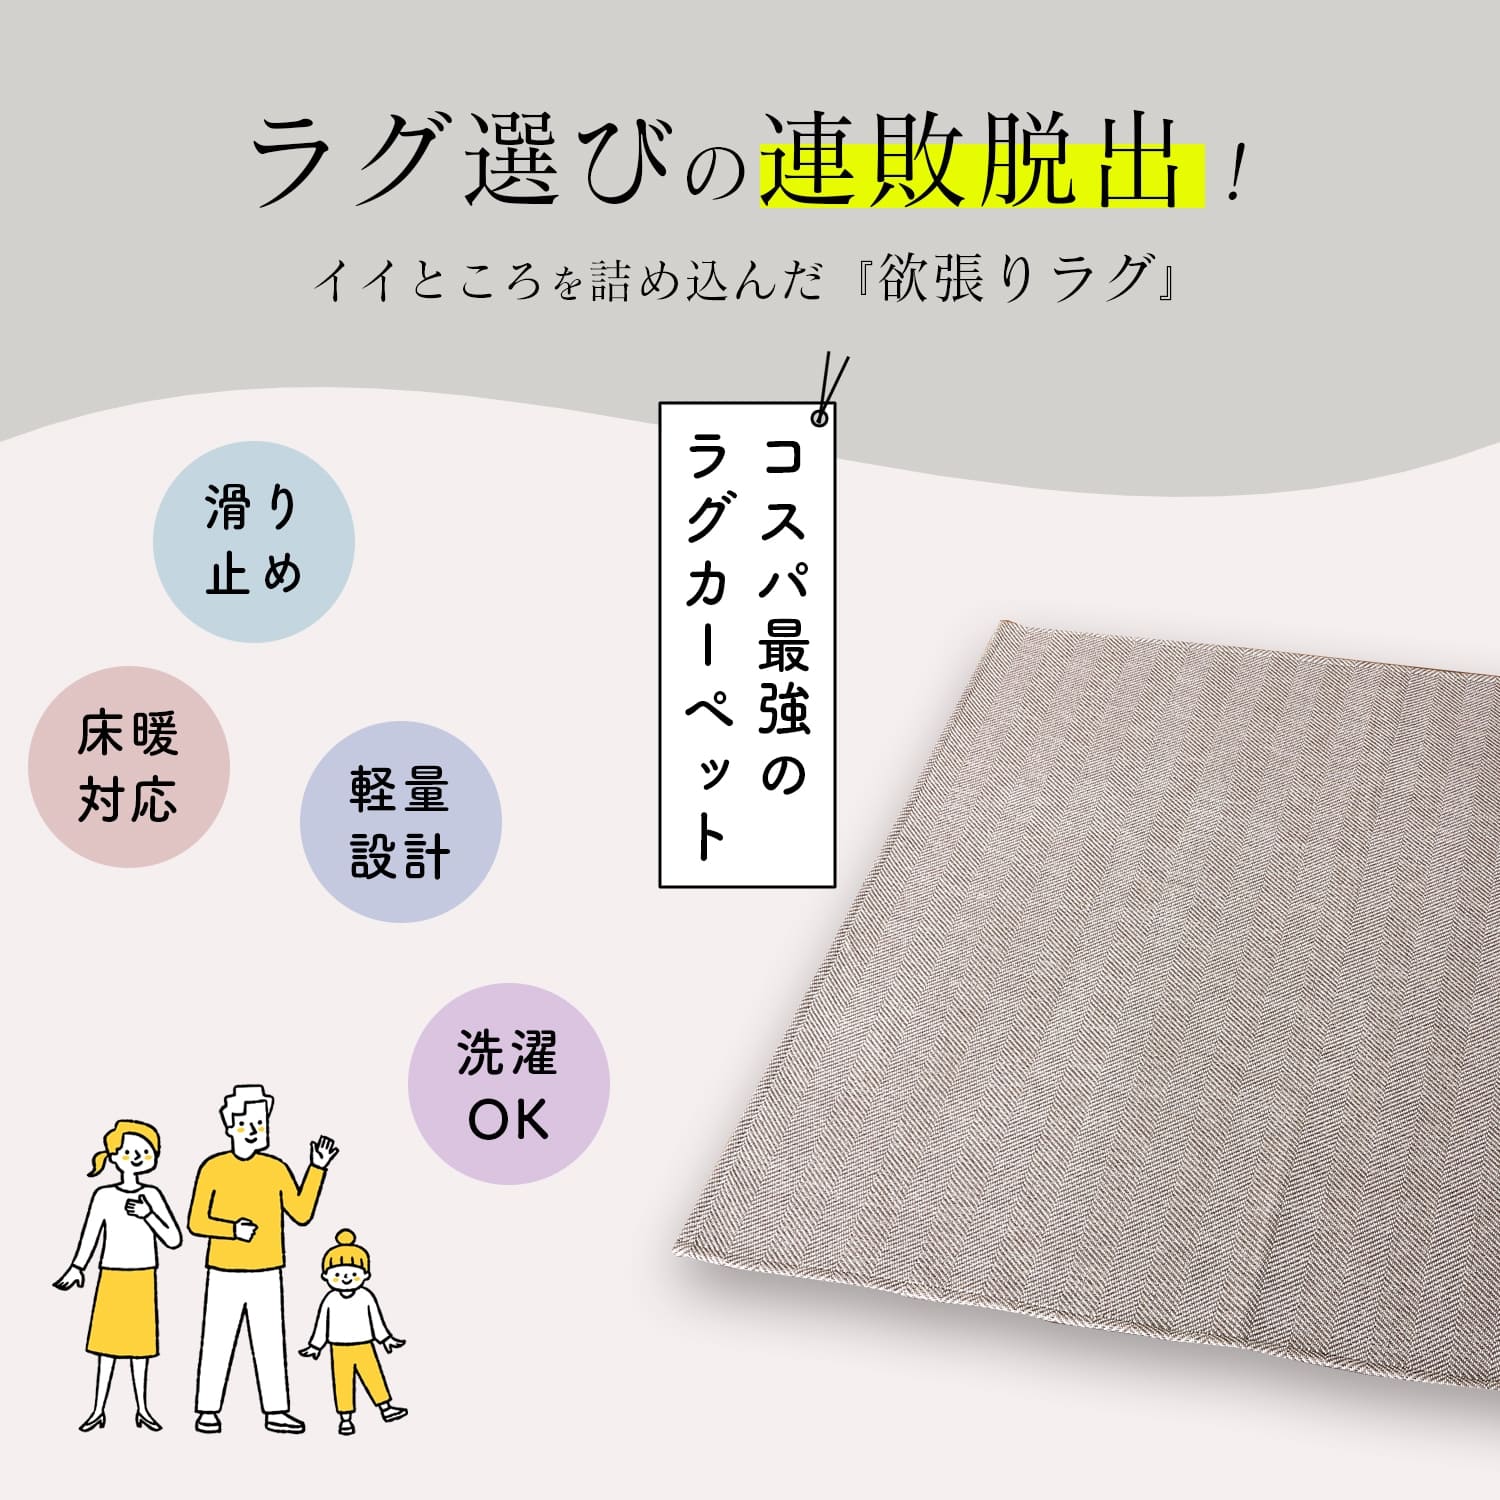 【楽天市場】万能 洗えるラグ リペコ Lサイズ 190×240 長方形 通年 防ダニ 日本製 床暖対応 カーペット マット 絨毯 北欧 ラグ